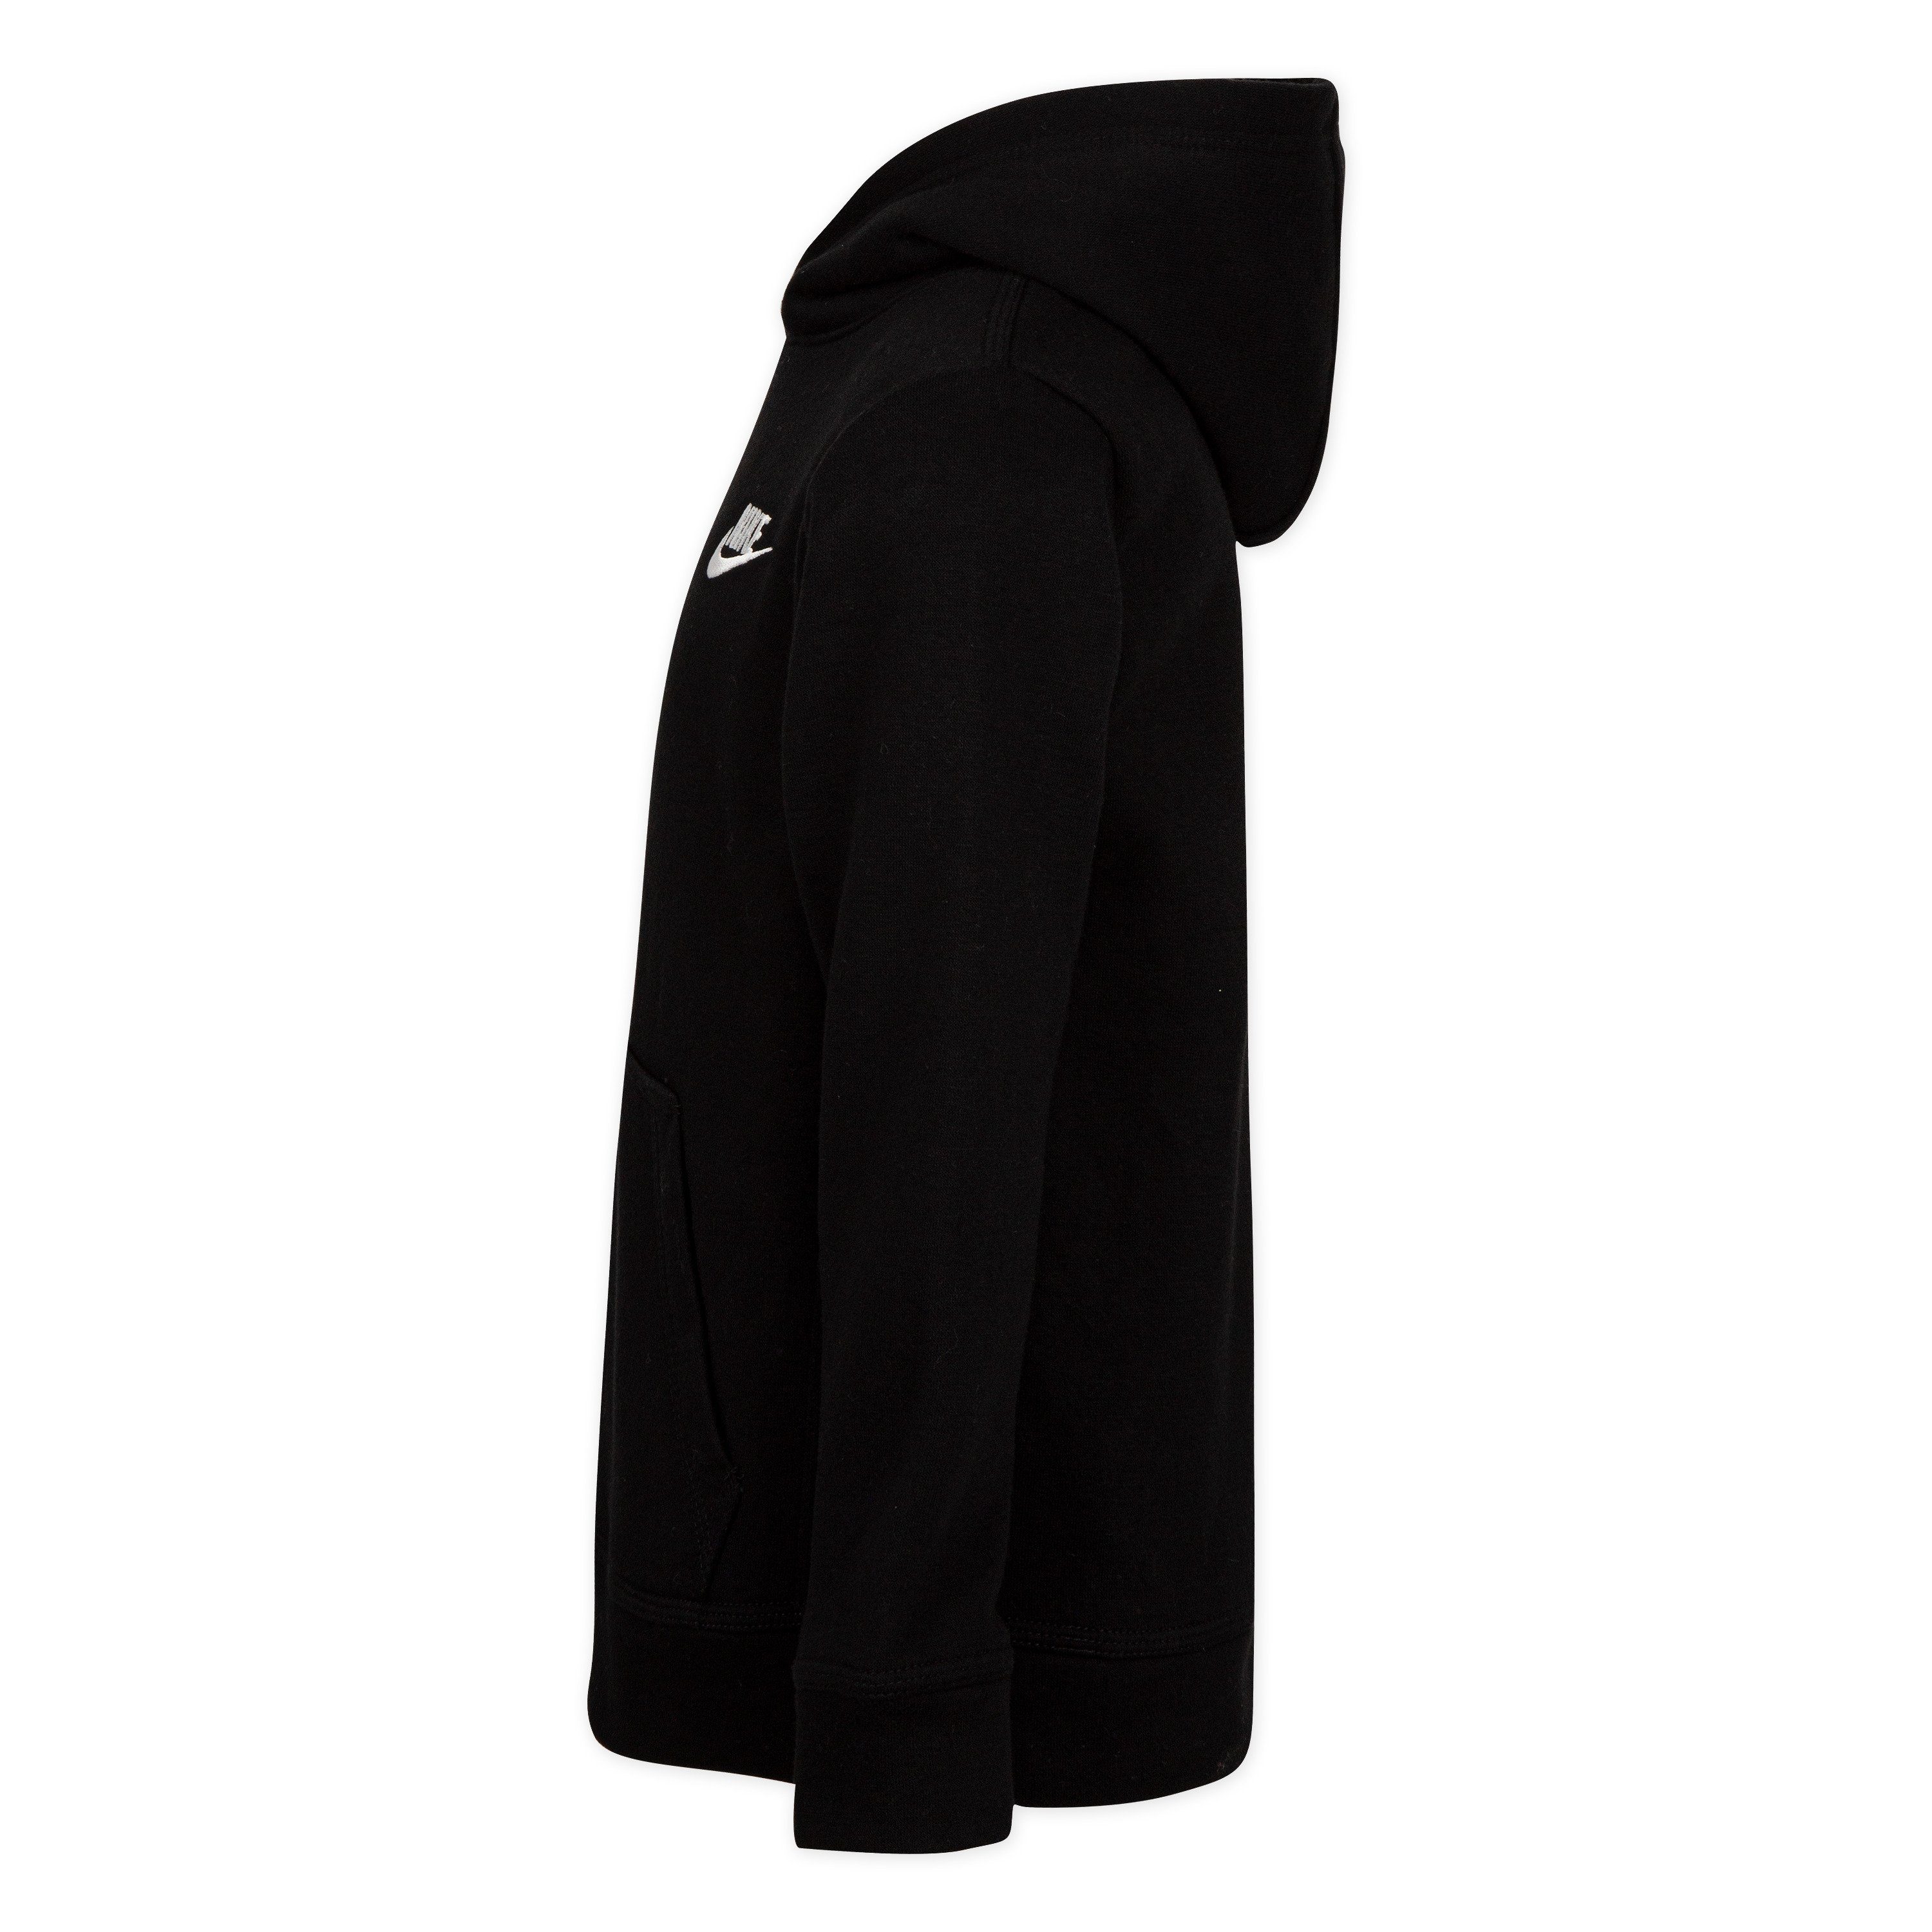 Kinder FLEECE CLUB - Nike schwarz Kapuzensweatshirt PO HOODIE NKB für Sportswear